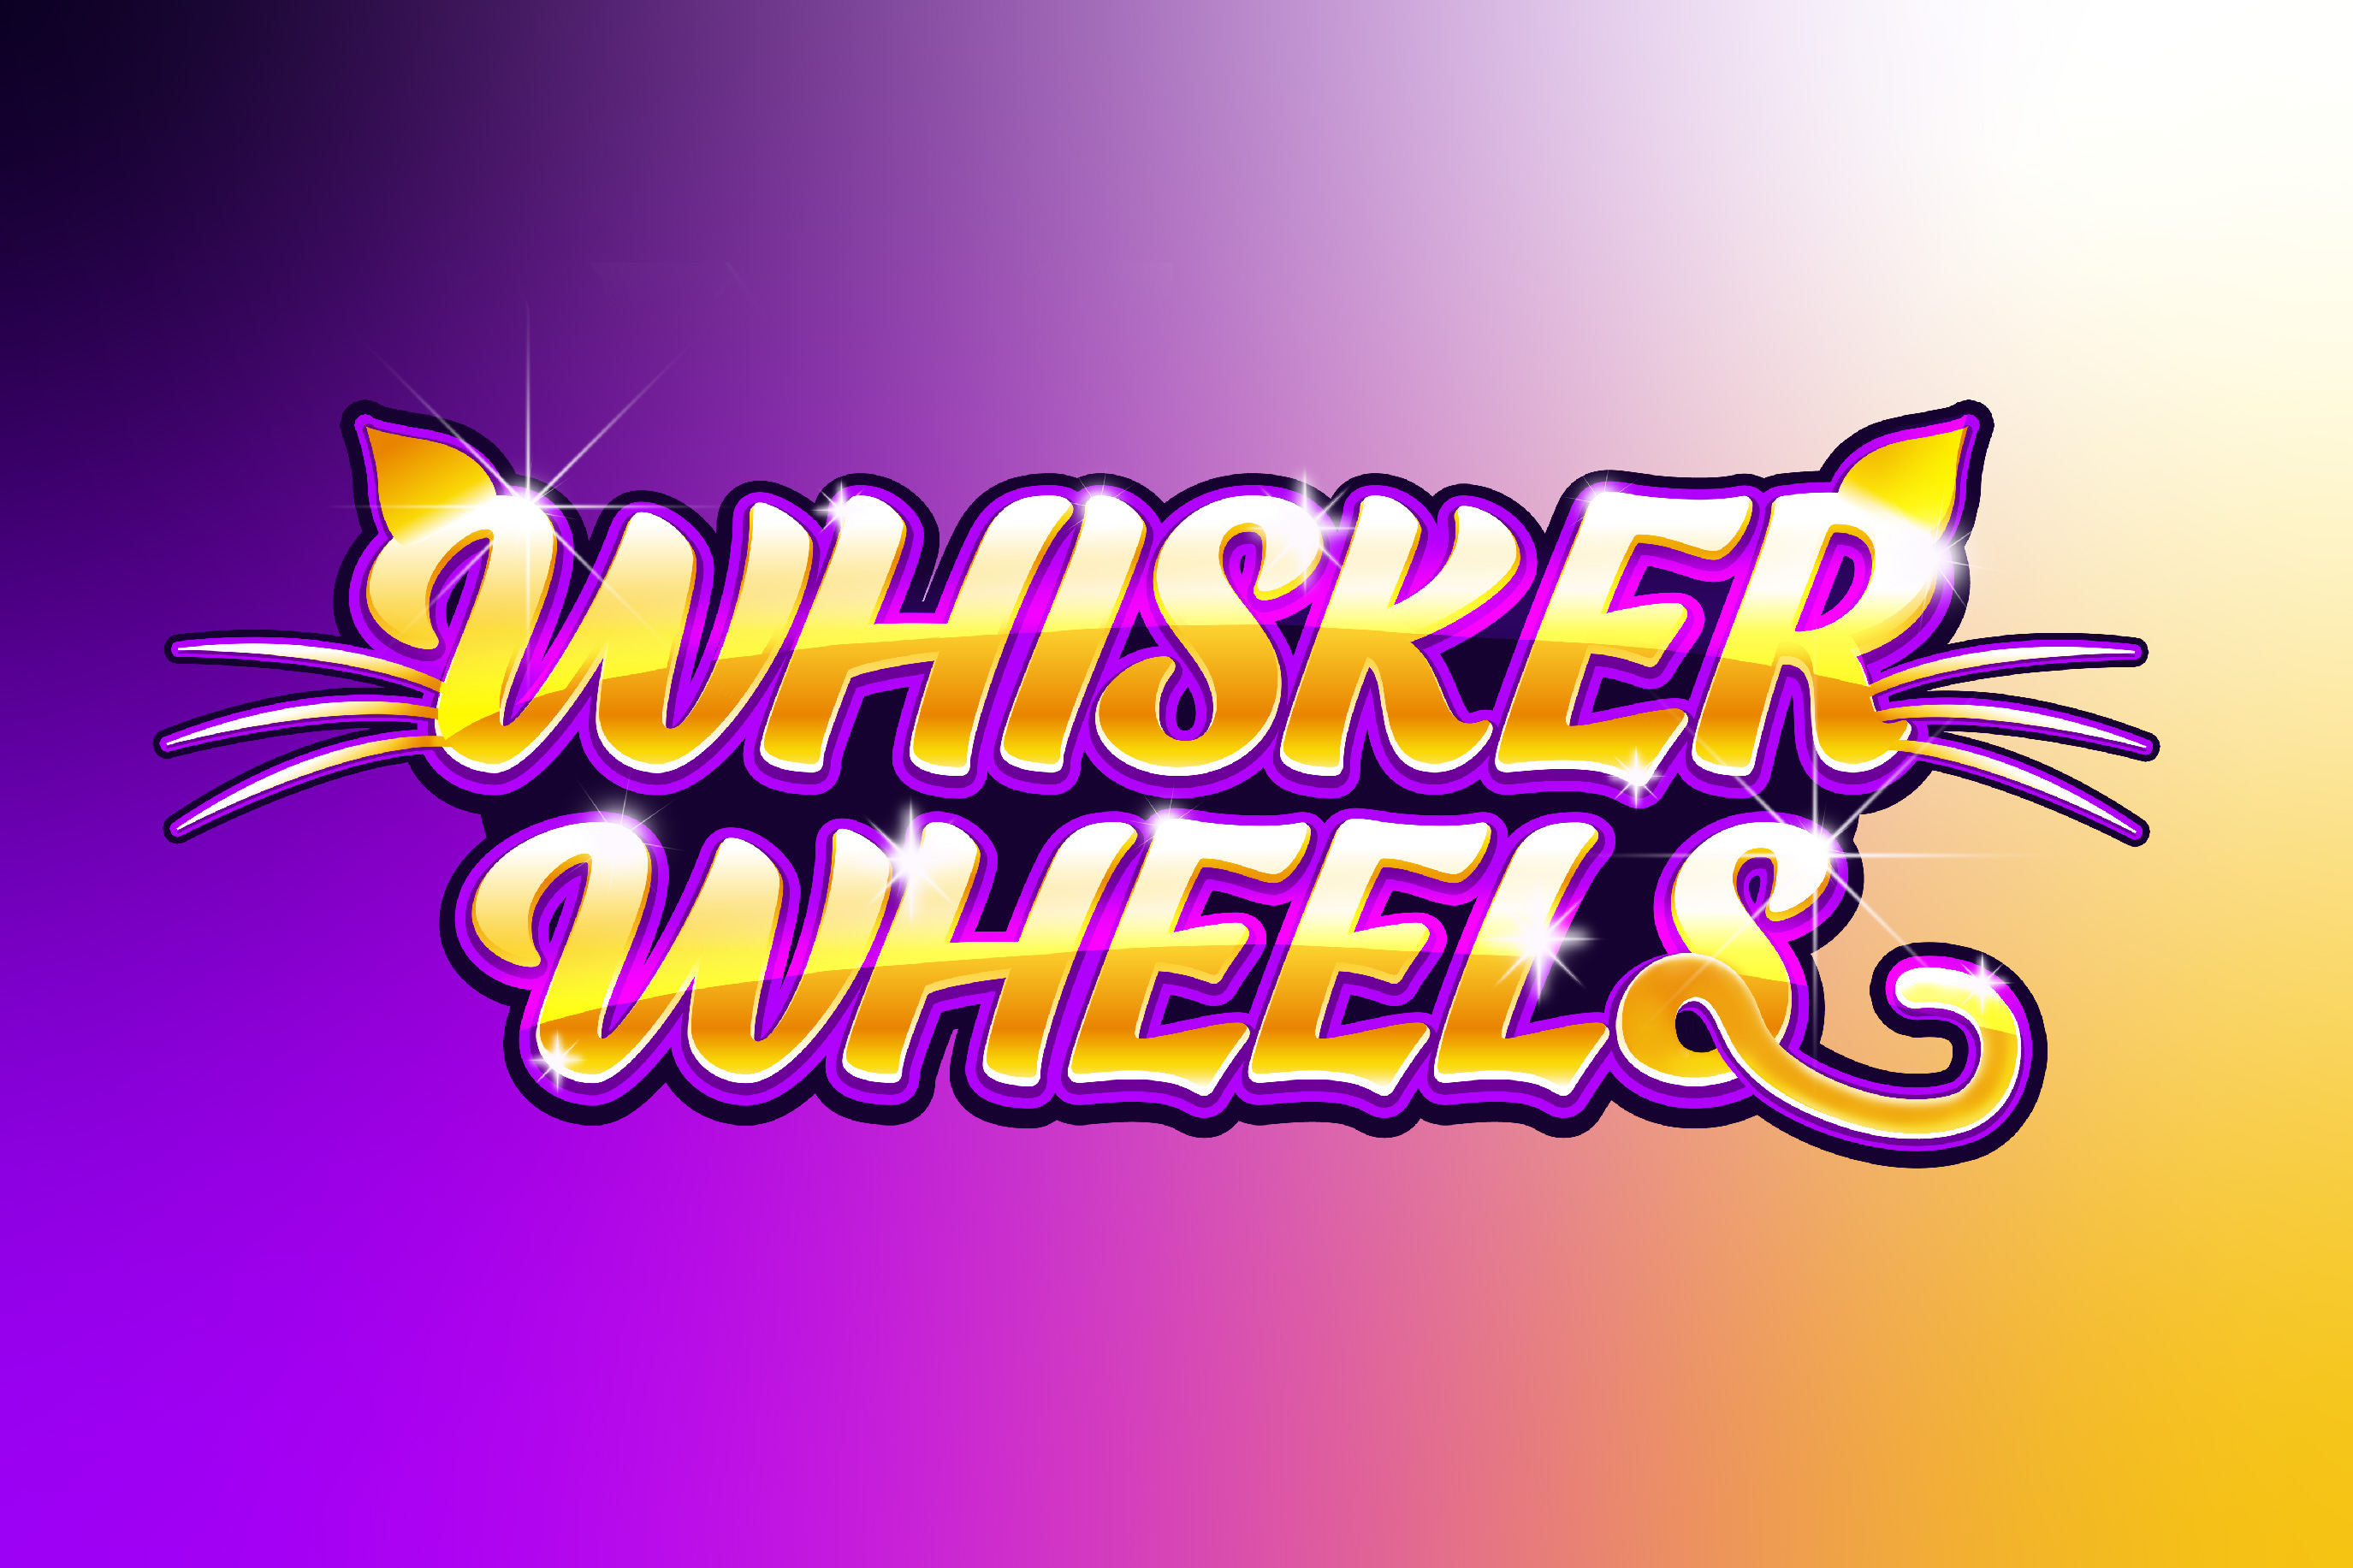 Whisker Wheels slot design